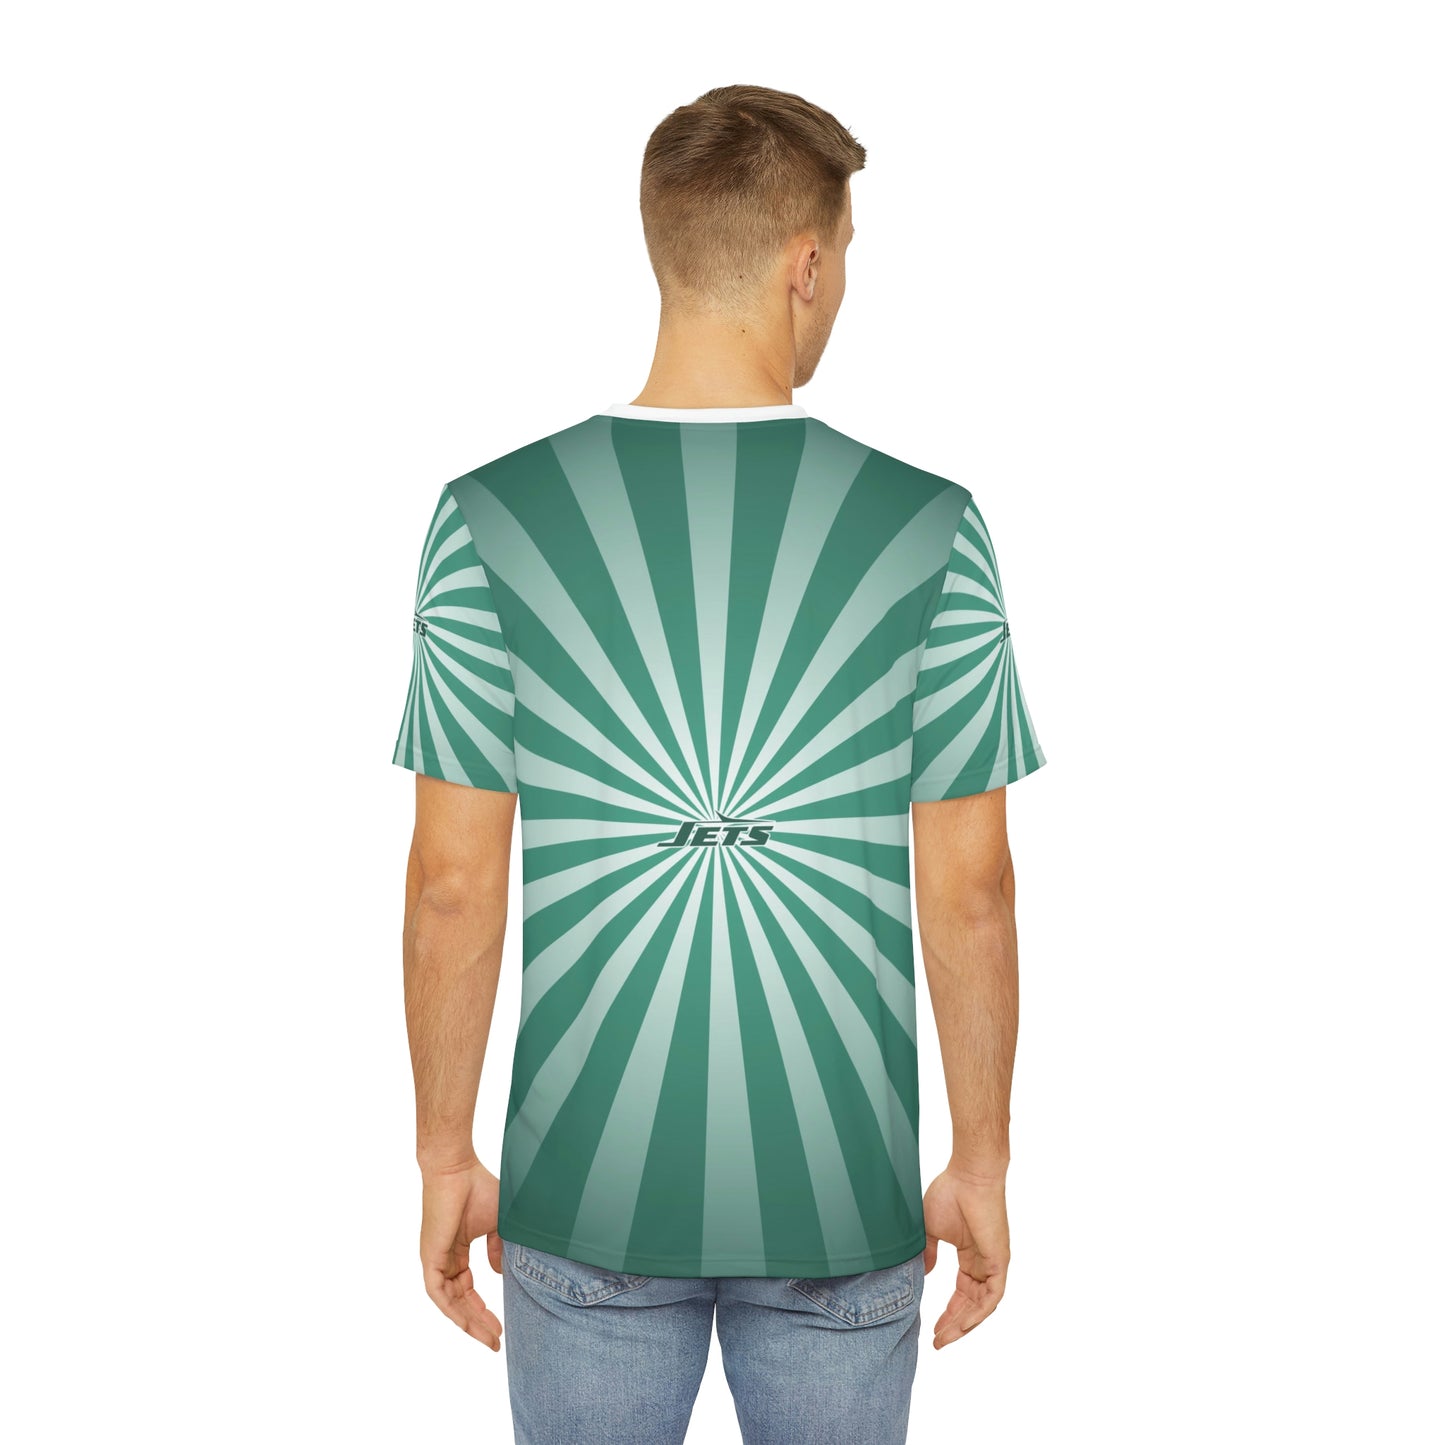 Geotrott NFL New York Jets Men's Polyester All Over Print Tee T-Shirt-All Over Prints-Geotrott